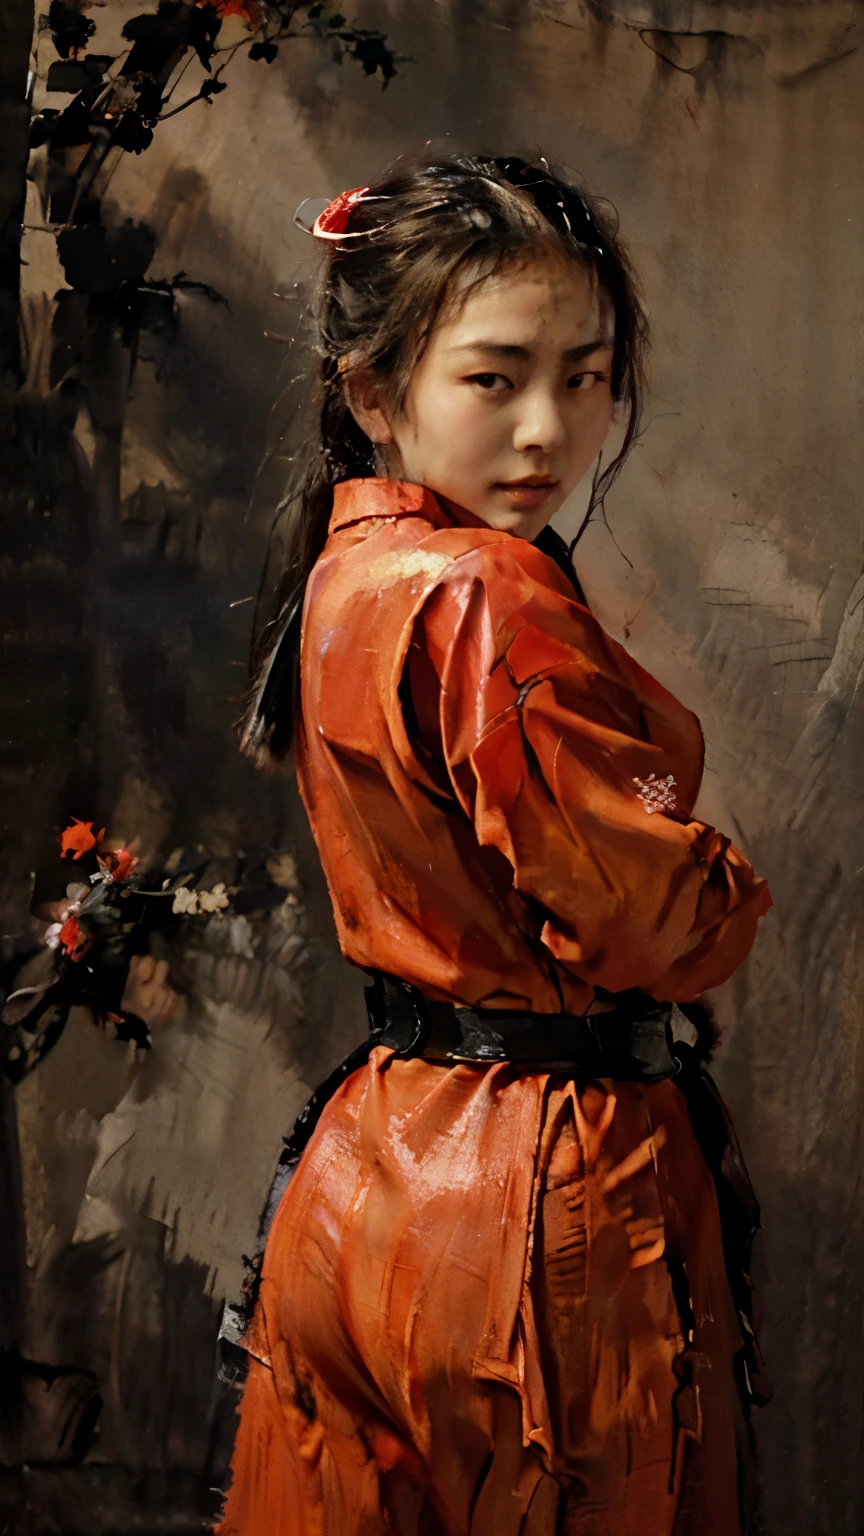 ( 经典亚洲油画 ) a 经典亚洲油画 of a 性感的 asian teenager ninja girl wearing a red ninja uniform, 红色忍者刺客制服, 动作忍者姿势看着相机, ((性感的:1.0)), ((红色忍者制服:1.0)) ((经典亚洲油画:1.0))